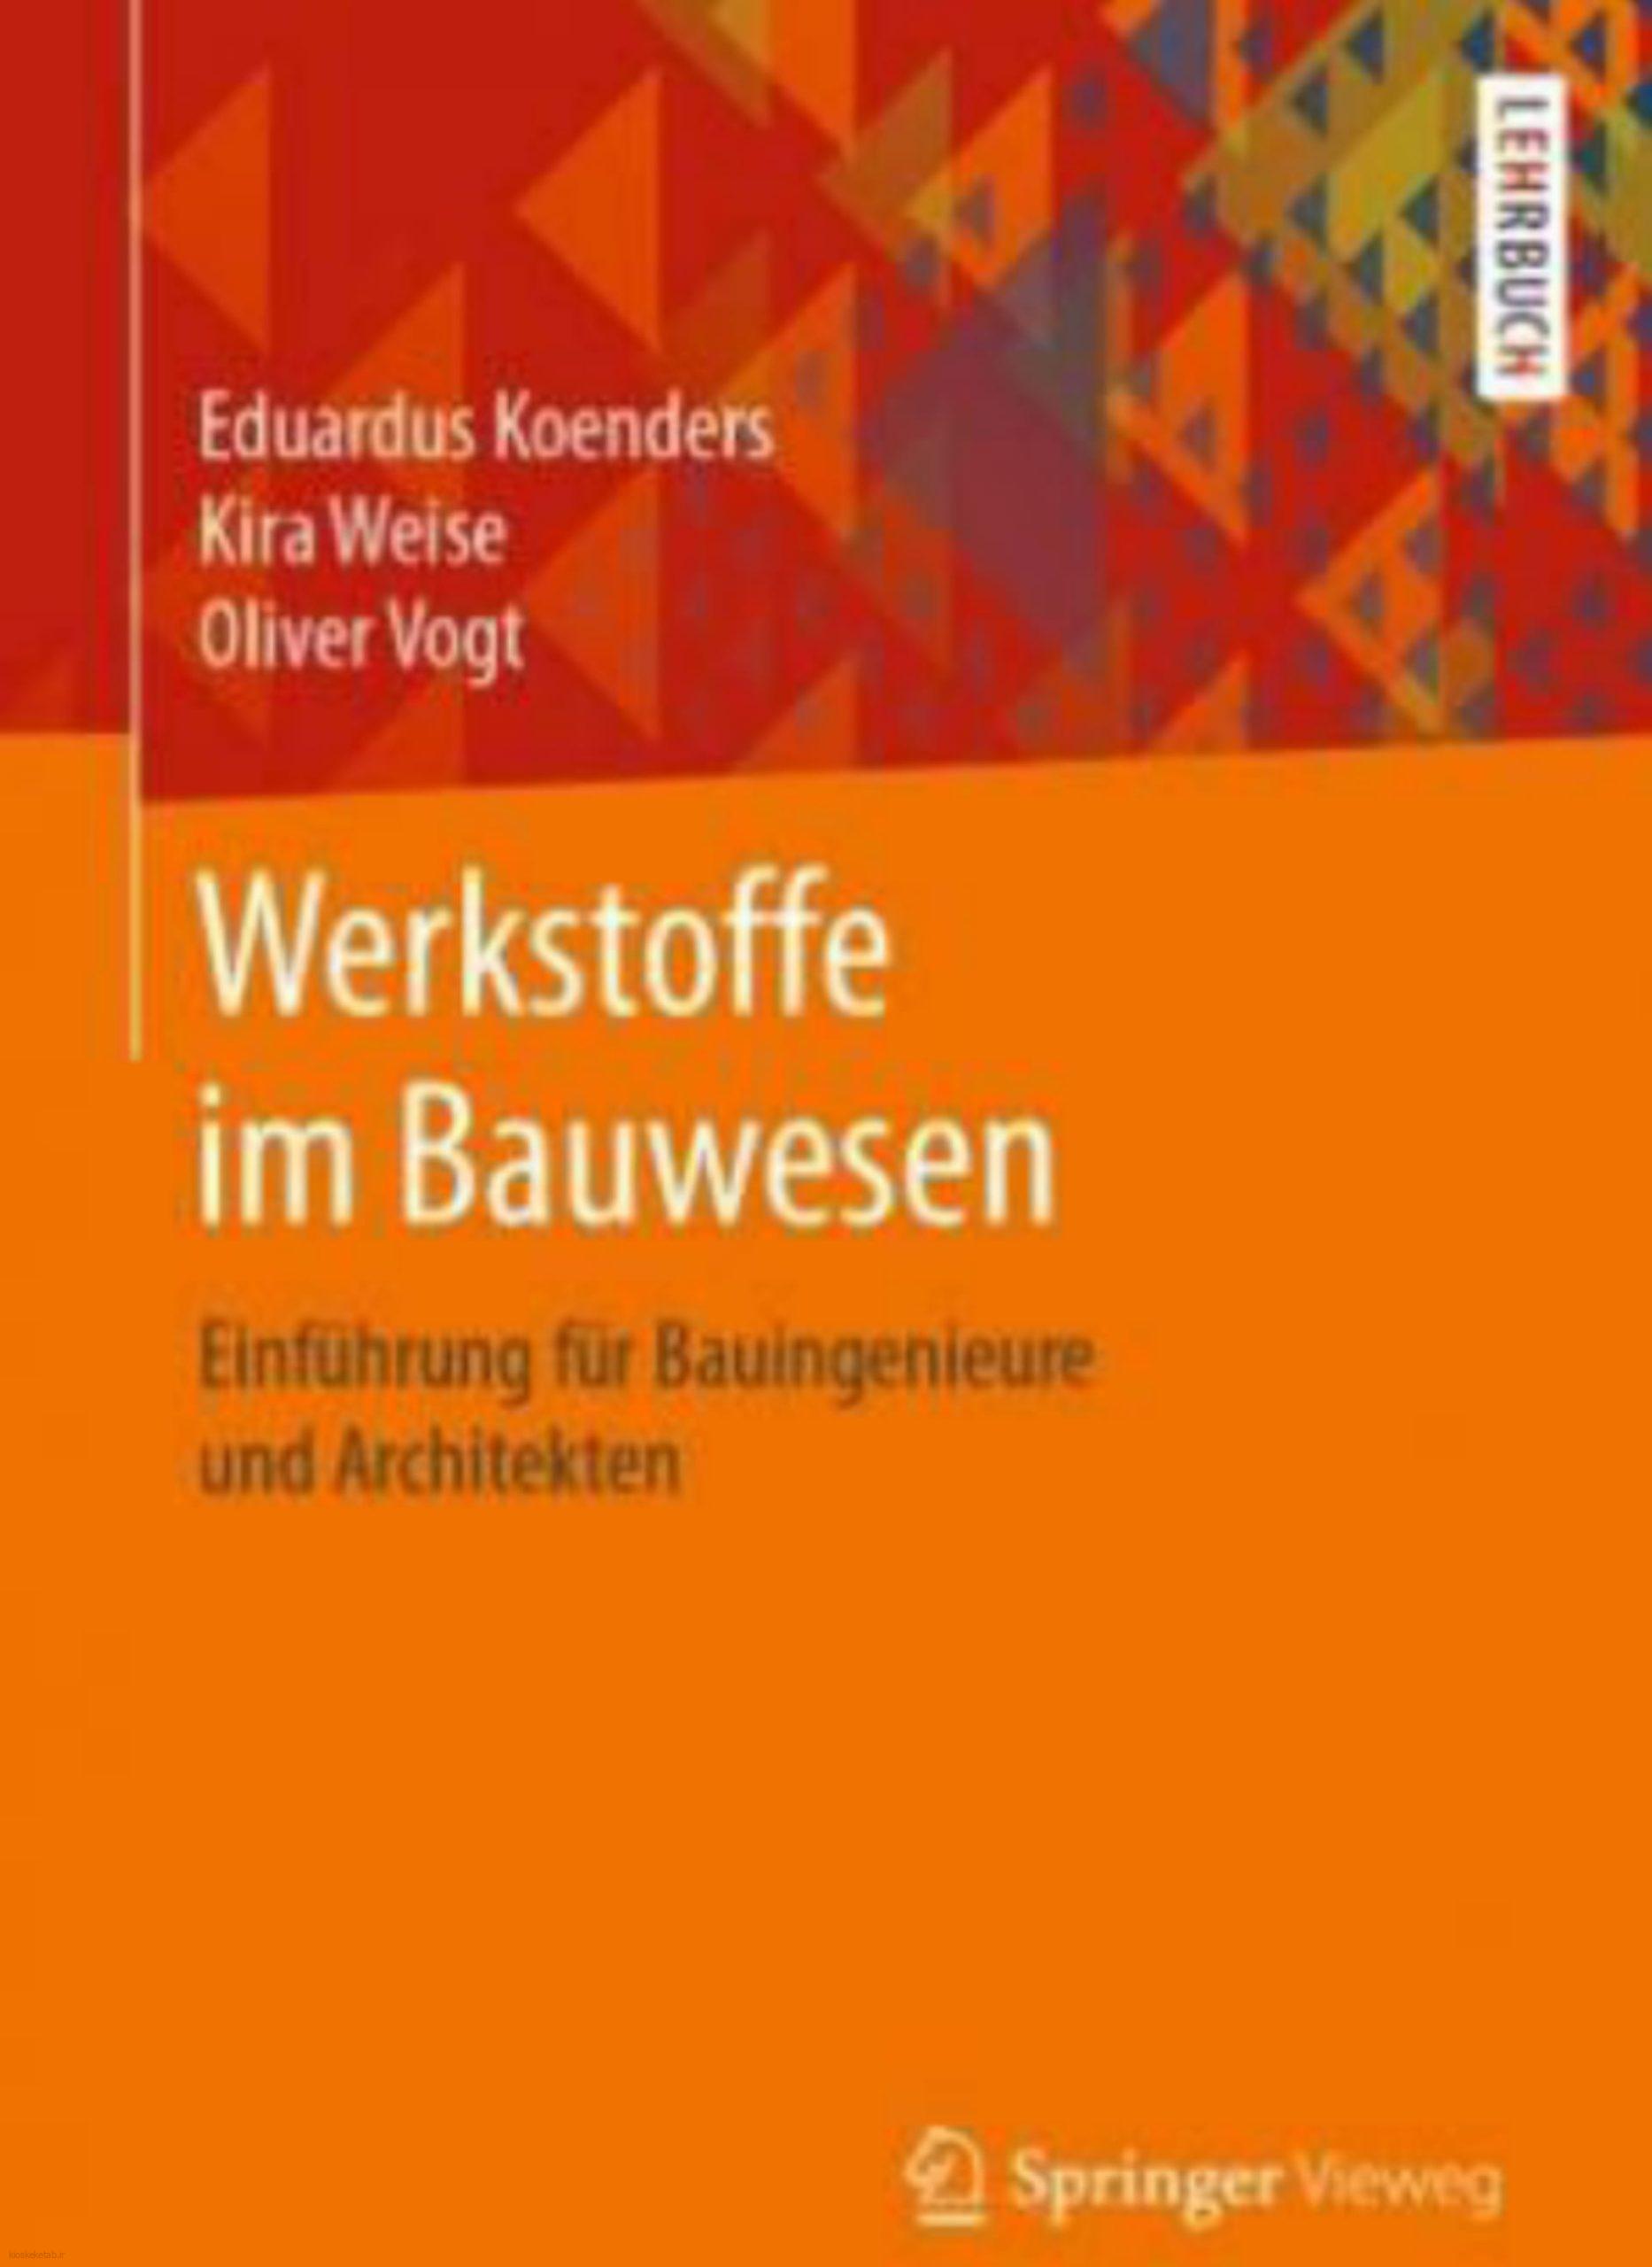 دانلود کتاب آلمانیwerkstoffe im bauwesen einfuhrung fur bauingenieure